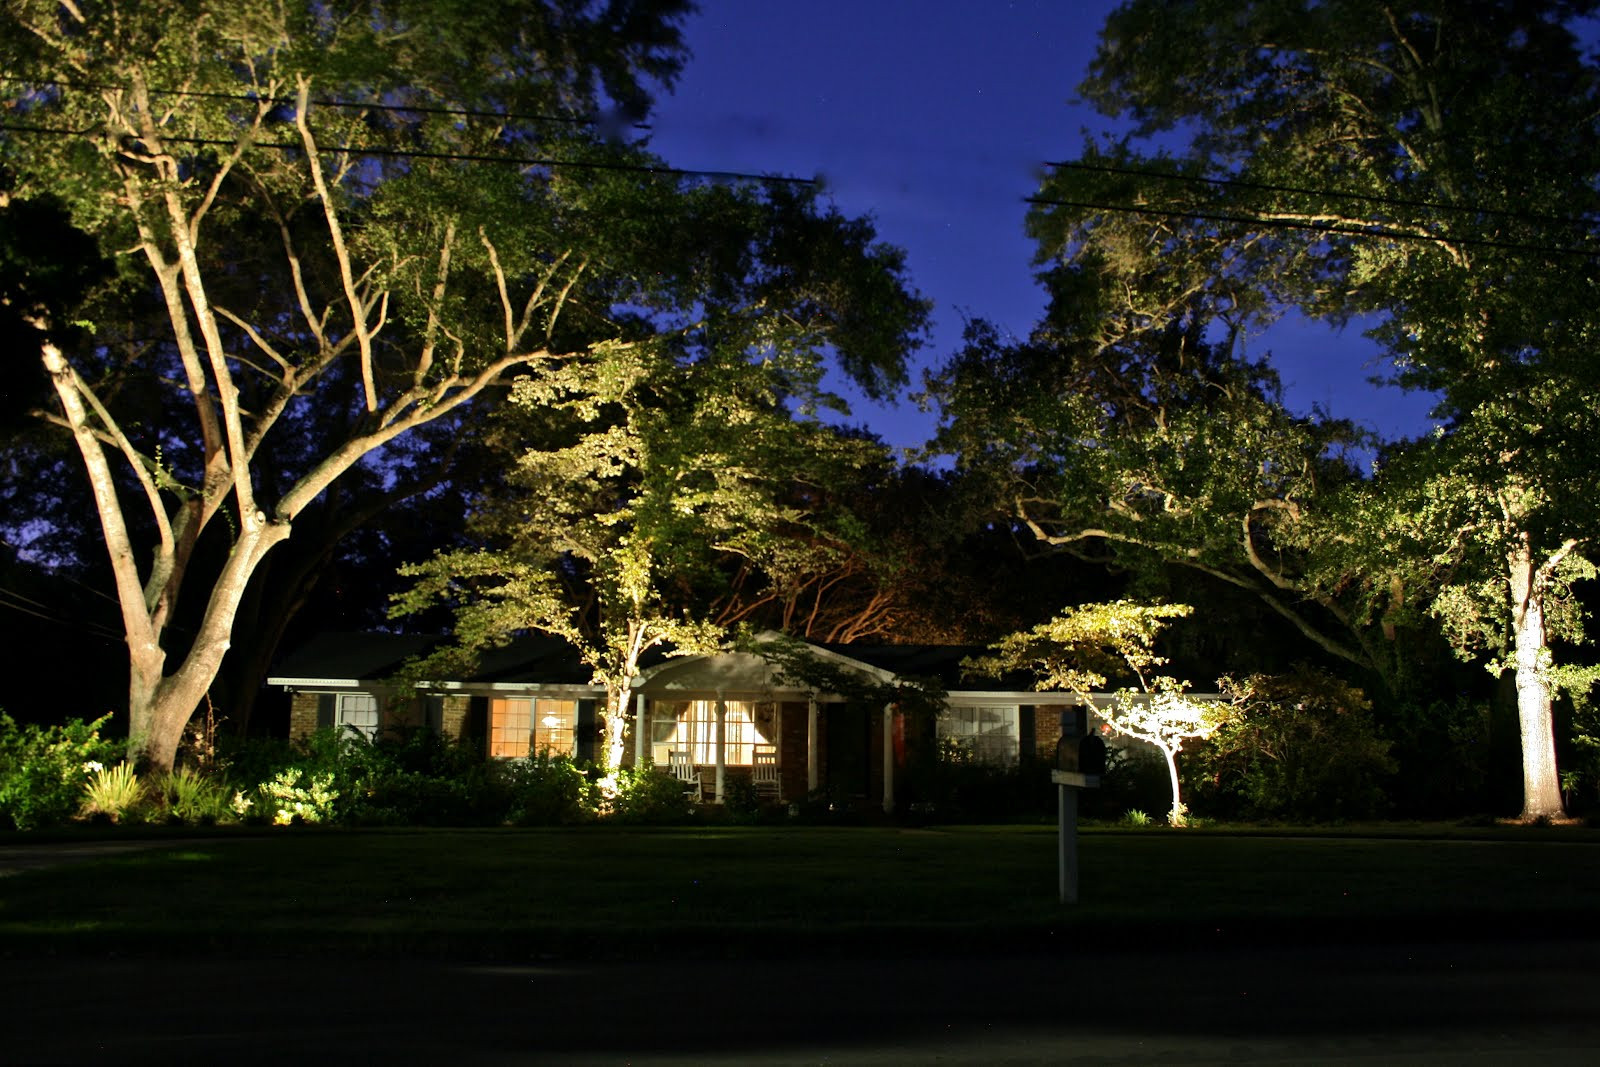 Best ideas about Led Landscape Lights
. Save or Pin Carolina Landscape Lighting LED or Incandescent Now.